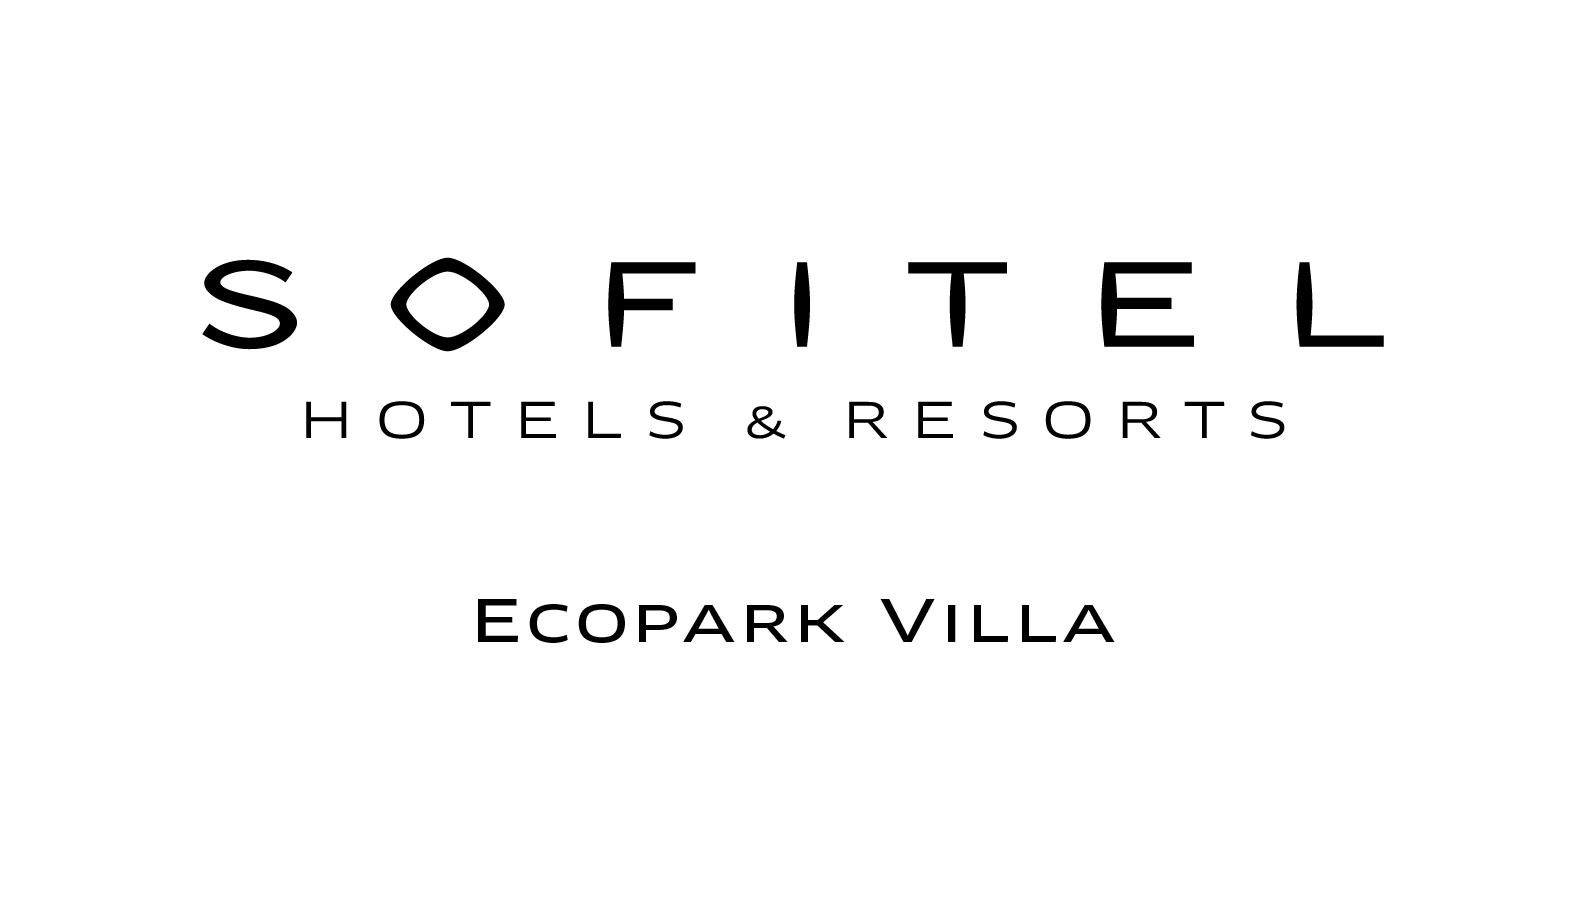 Sofitel Ecopark là branded villa đầu tiên tại Việt Nam được phát triển và quản lý vận hành bởi thương hiệu Sofitel Hotels & Resort